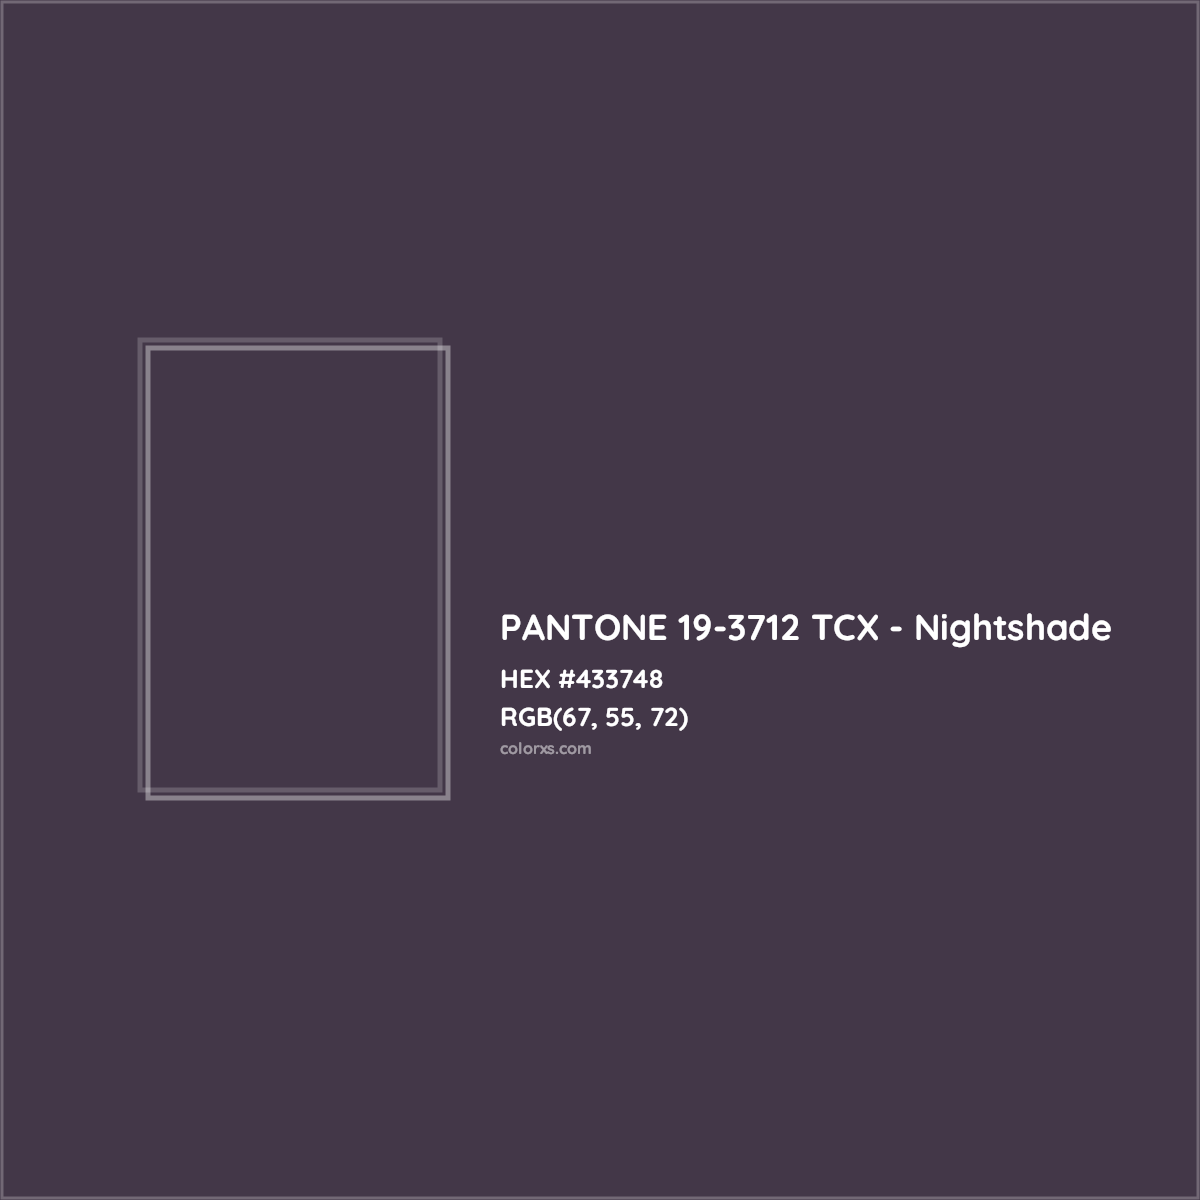 HEX #433748 PANTONE 19-3712 TCX - Nightshade CMS Pantone TCX - Color Code